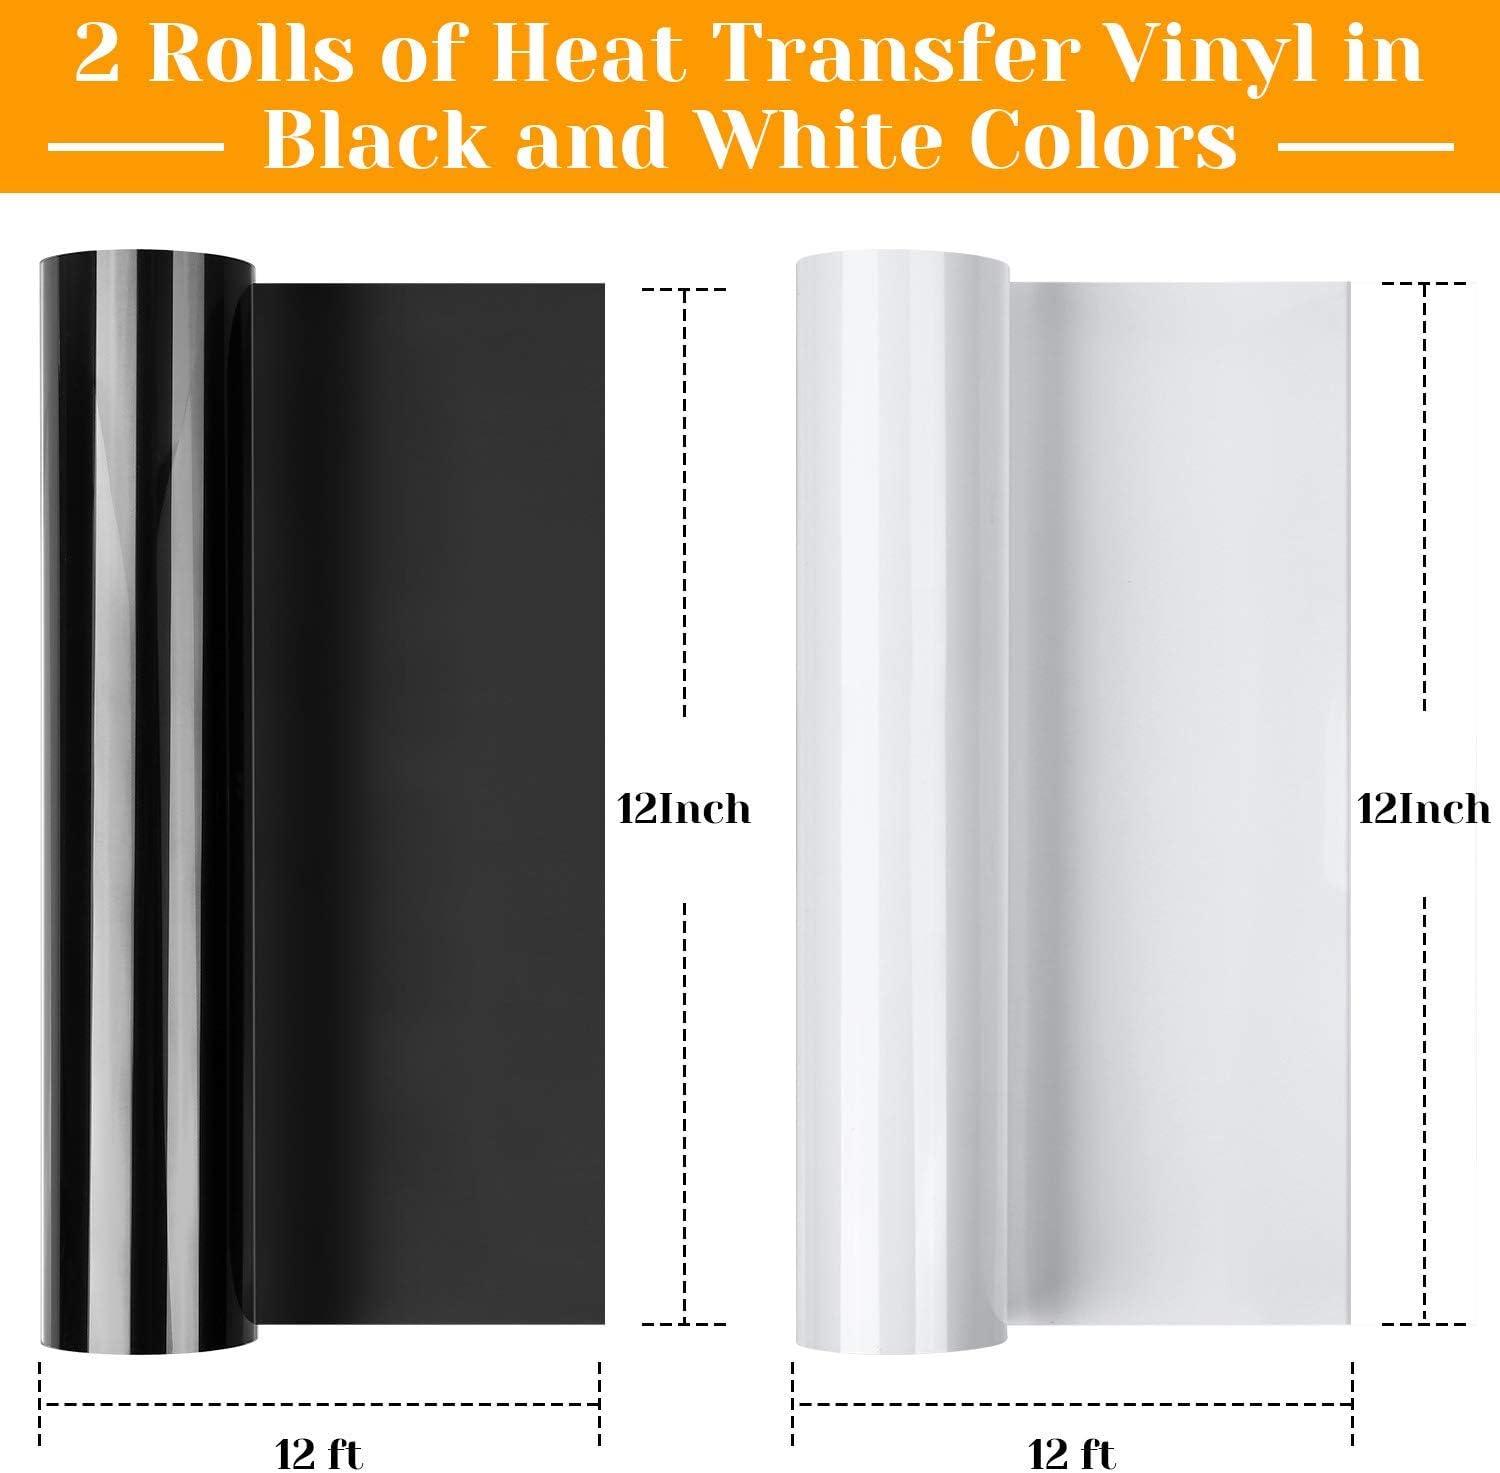 HTV Vinyl Rolls | Heat Transfer Vinyl Rolls 12 x 100 ft Black